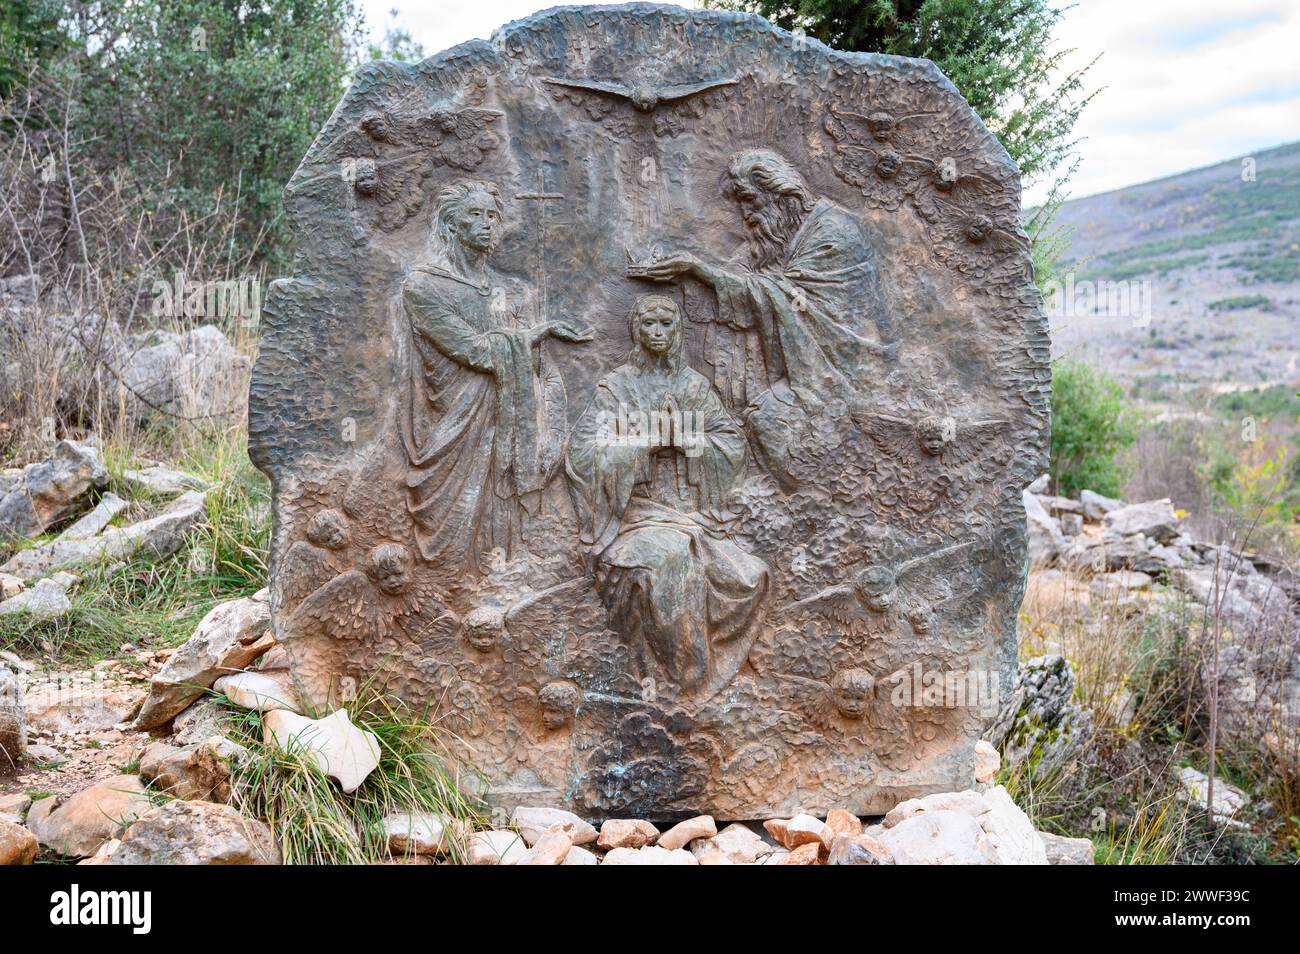 Le couronnement de Marie - Cinquième mystère glorieux du Rosaire. Sculpture en relief sur le mont Podbrdo (la colline des apparitions) à Medjugorje. Banque D'Images